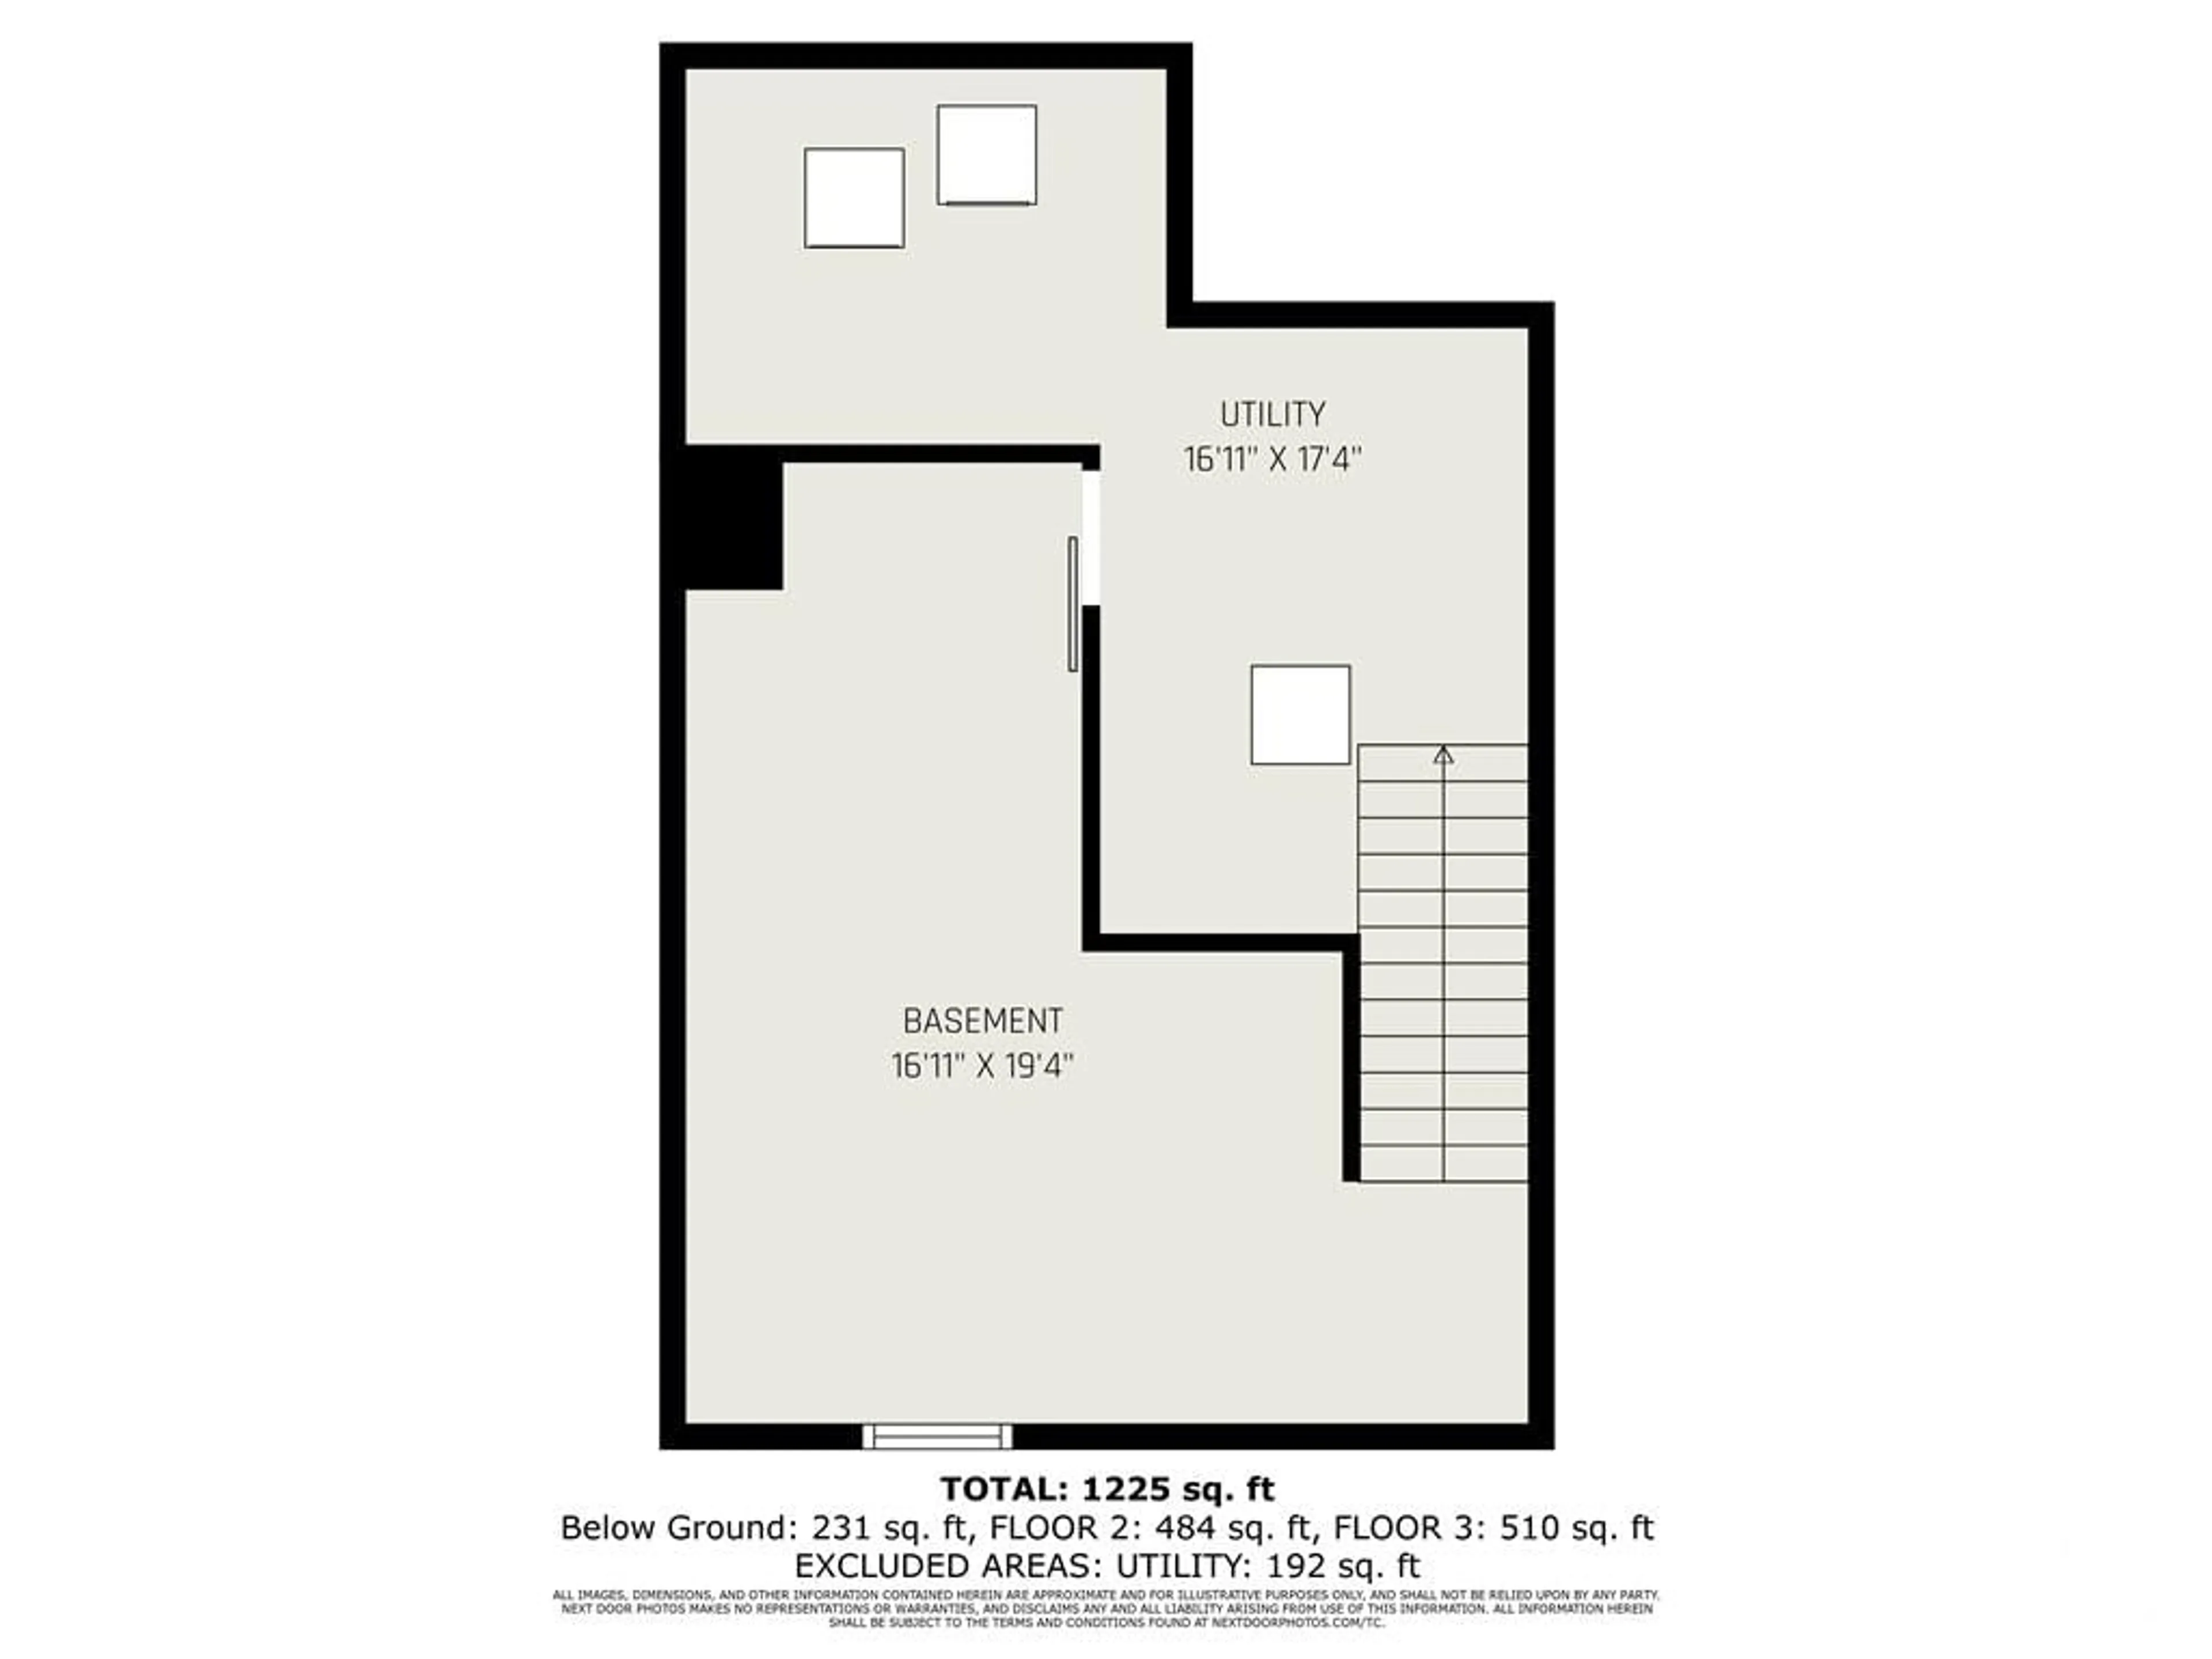 Floor plan for 1214 Priory Lane, Ottawa Ontario K1C 1Z9